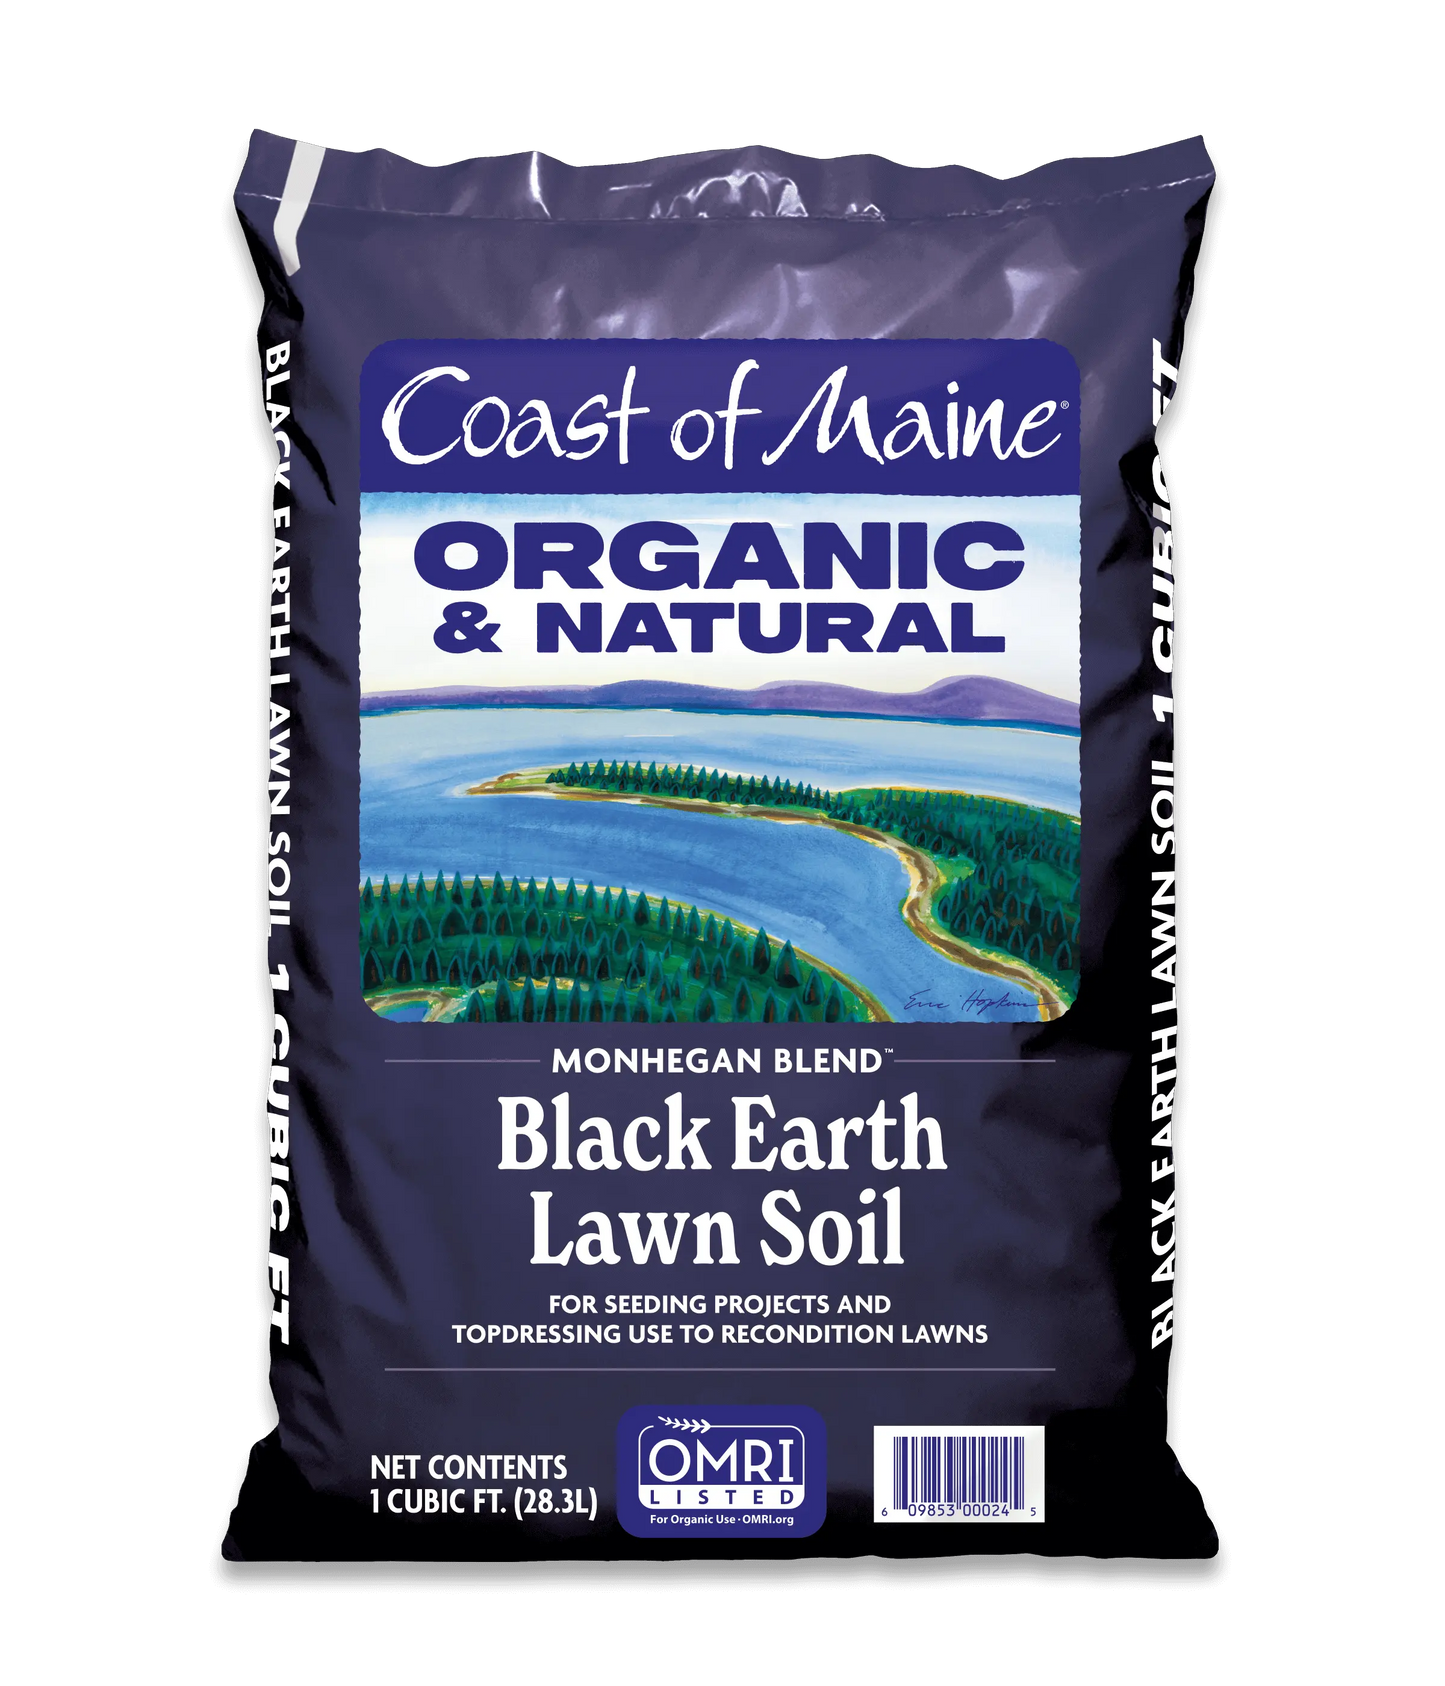 Black Earth Lawn Soil